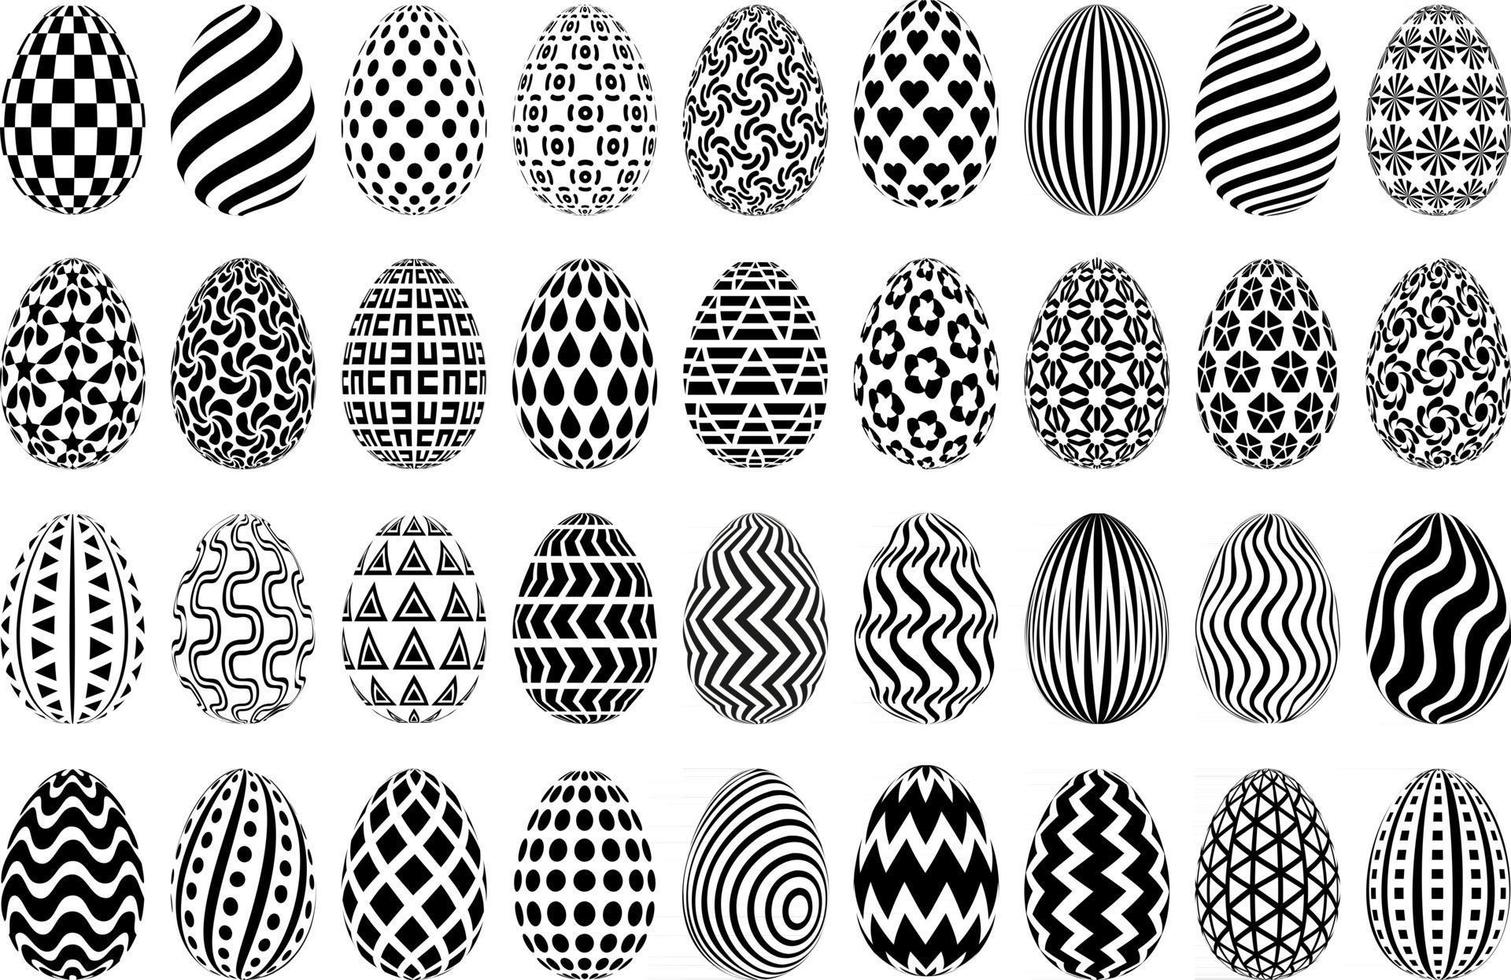 Conjunto de ilustraciones de huevos de Pascua en blanco y negro. colección de huevos de pascua estilizados. Huevos decorativos con dibujos monocromáticos aislados sobre fondo blanco. vector